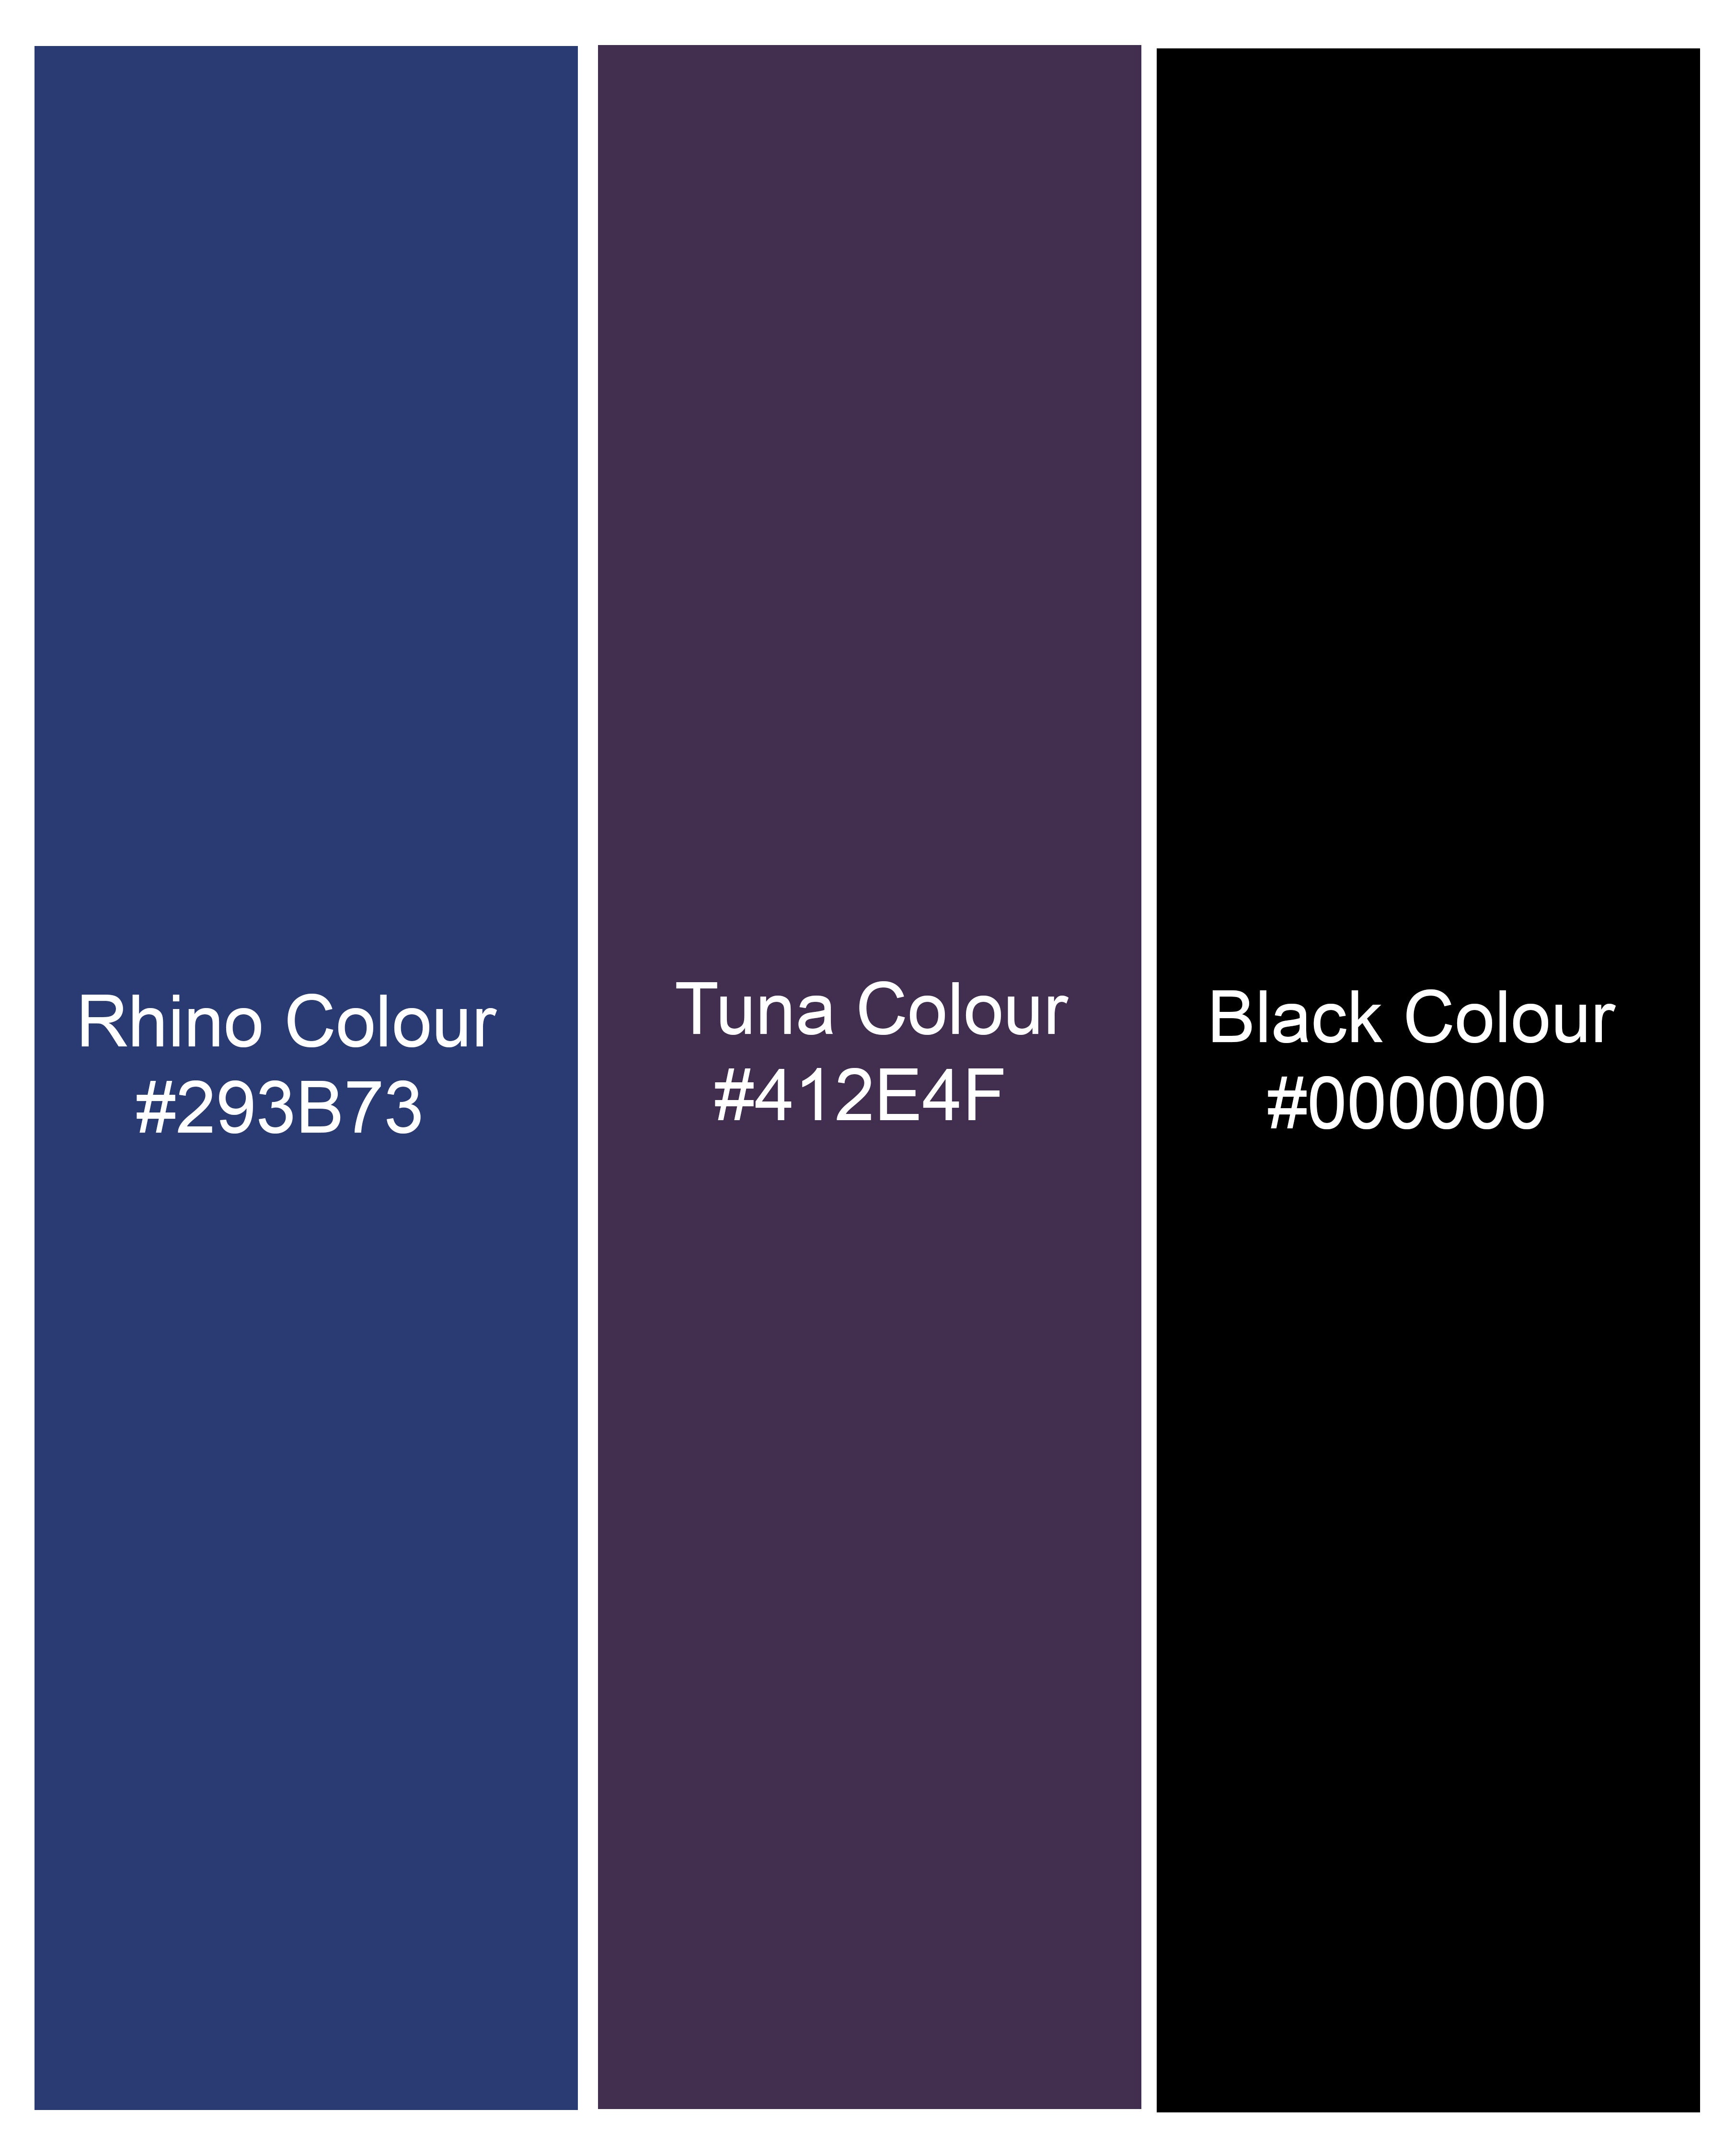 Rhino Blue and Tuna Violet Checkered Premium Cotton Shirt 9507-38, 9507-H-38, 9507-39, 9507-H-39, 9507-40, 9507-H-40, 9507-42, 9507-H-42, 9507-44, 9507-H-44, 9507-46, 9507-H-46, 9507-48, 9507-H-48, 9507-50, 9507-H-50, 9507-52, 9507-H-52